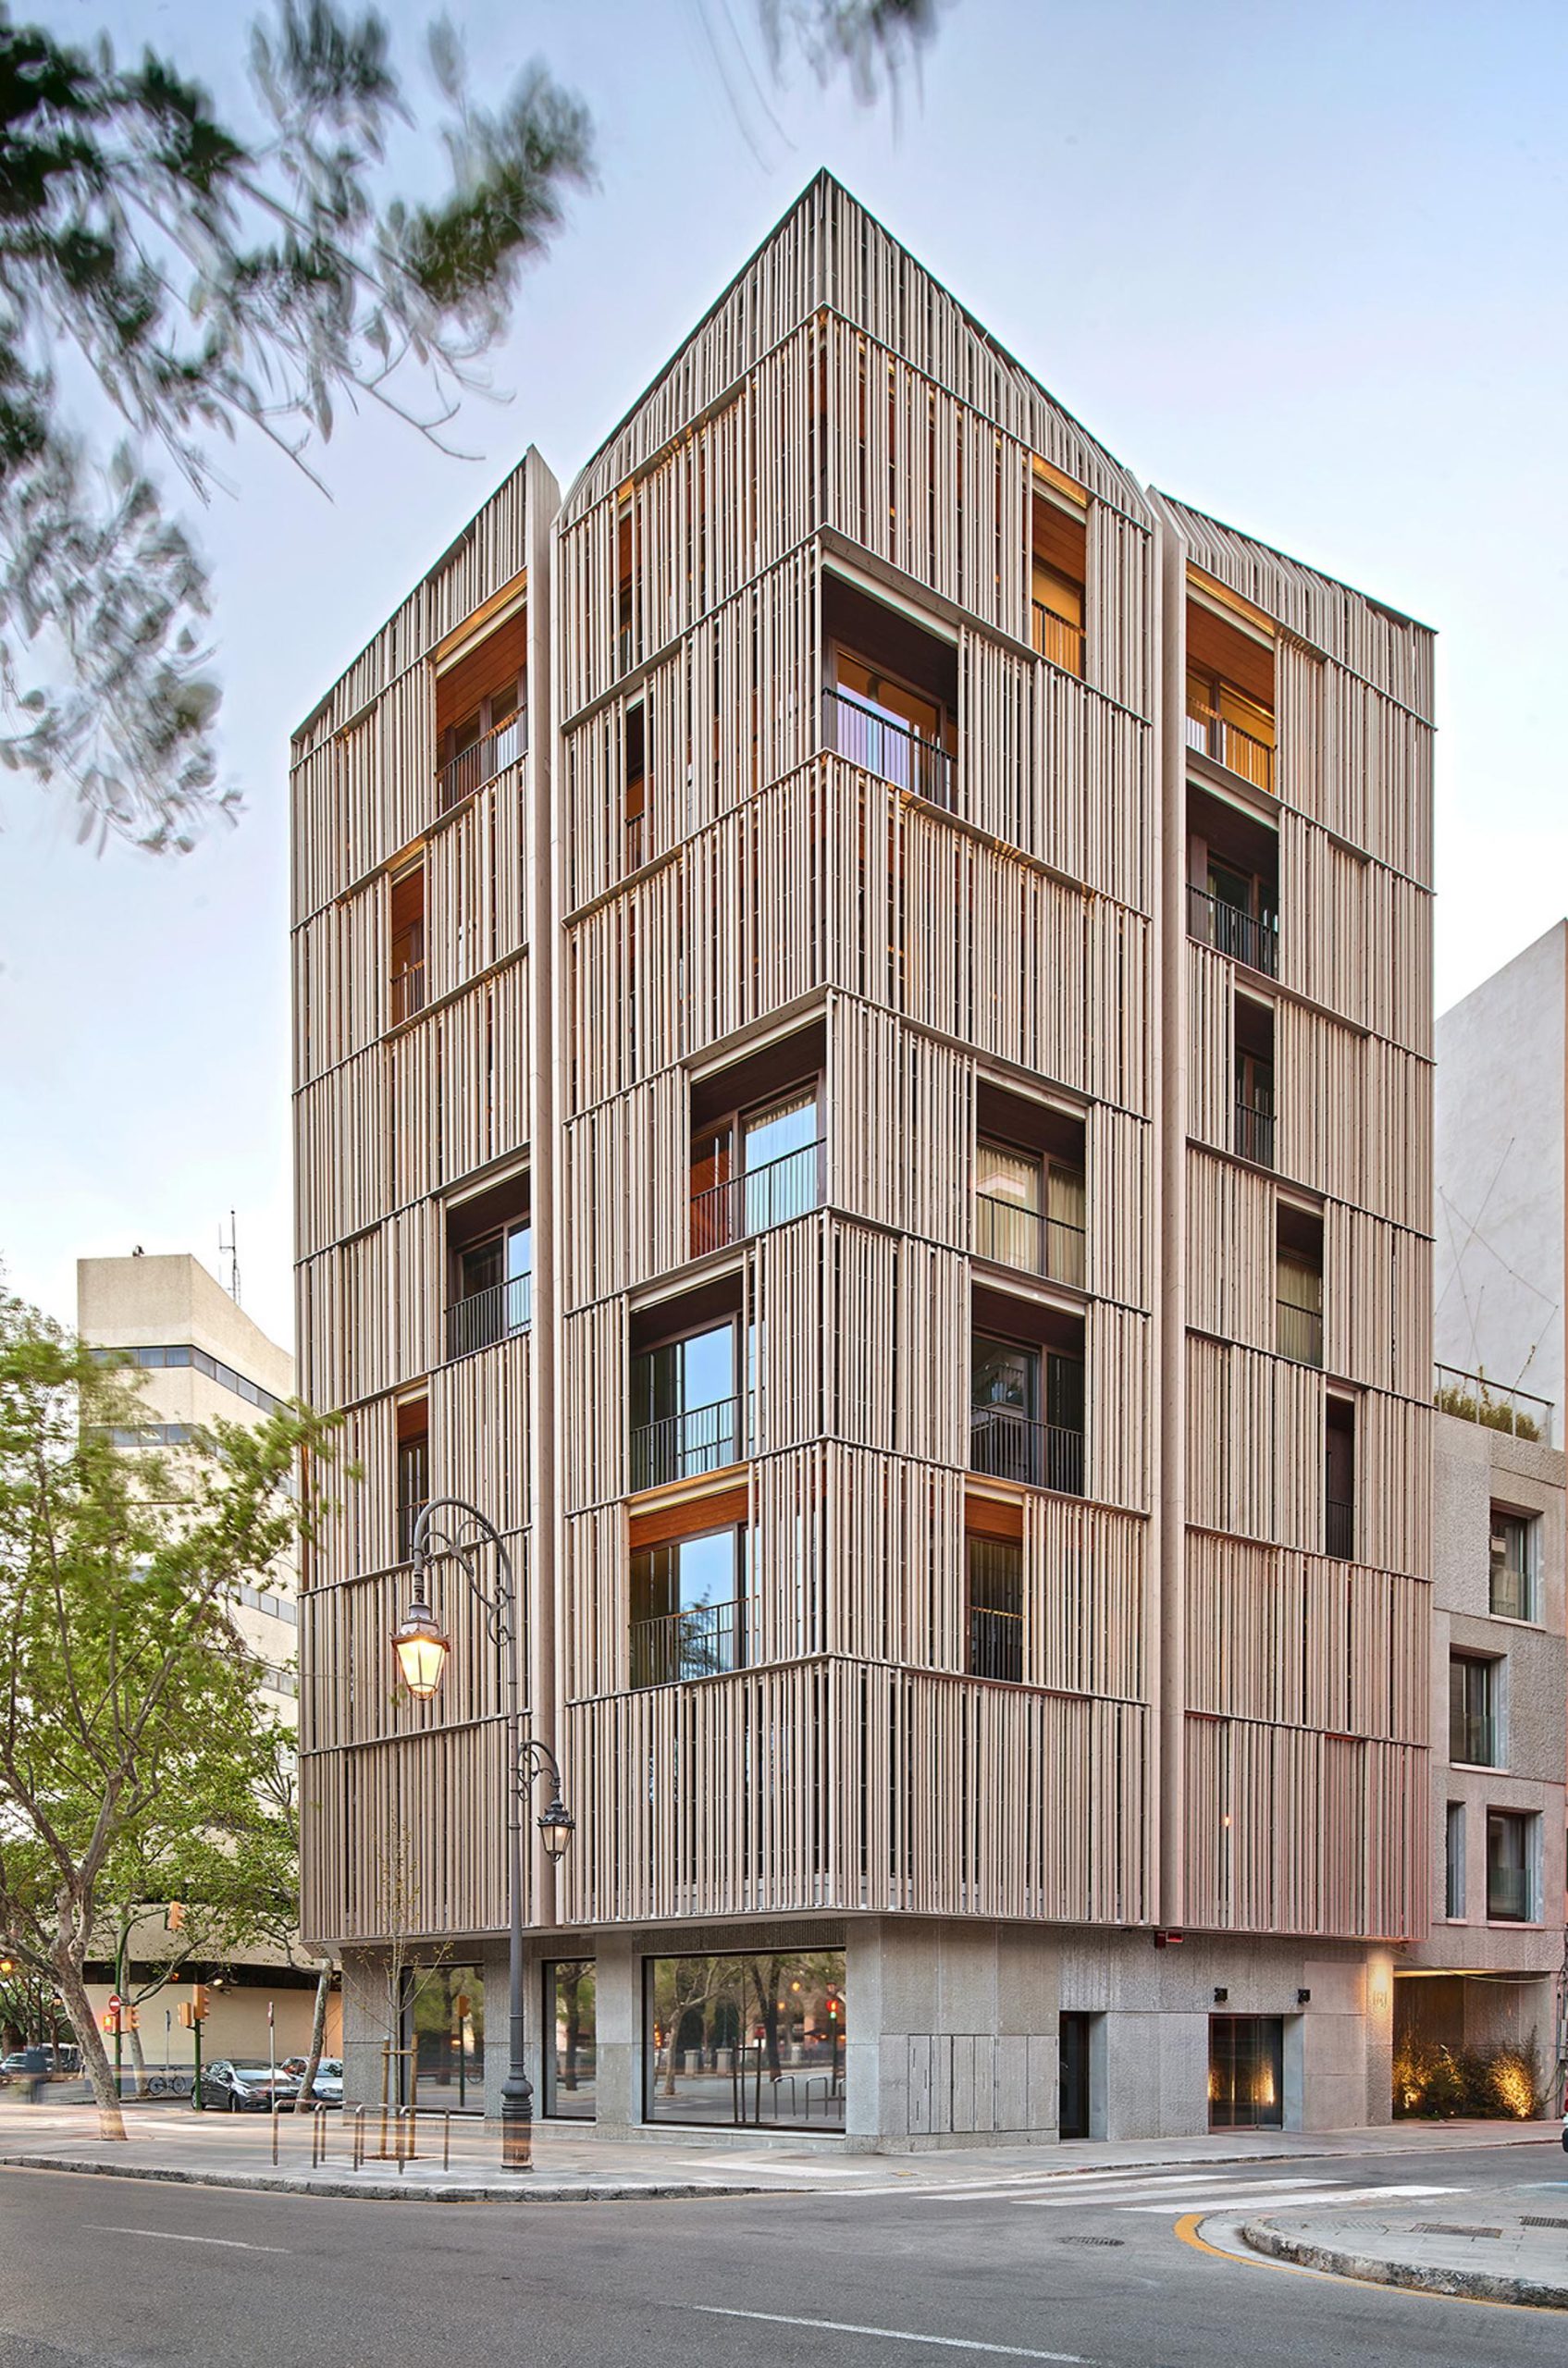 جایزه بهترین استفاده از چوب تایید شده، که ساختمان های ساخته شده از چوب پایدار را تبلیغ می کند، به پاسئو مایورکا 15 اسپانیا، توسط OHLAB تعلق گرفت.